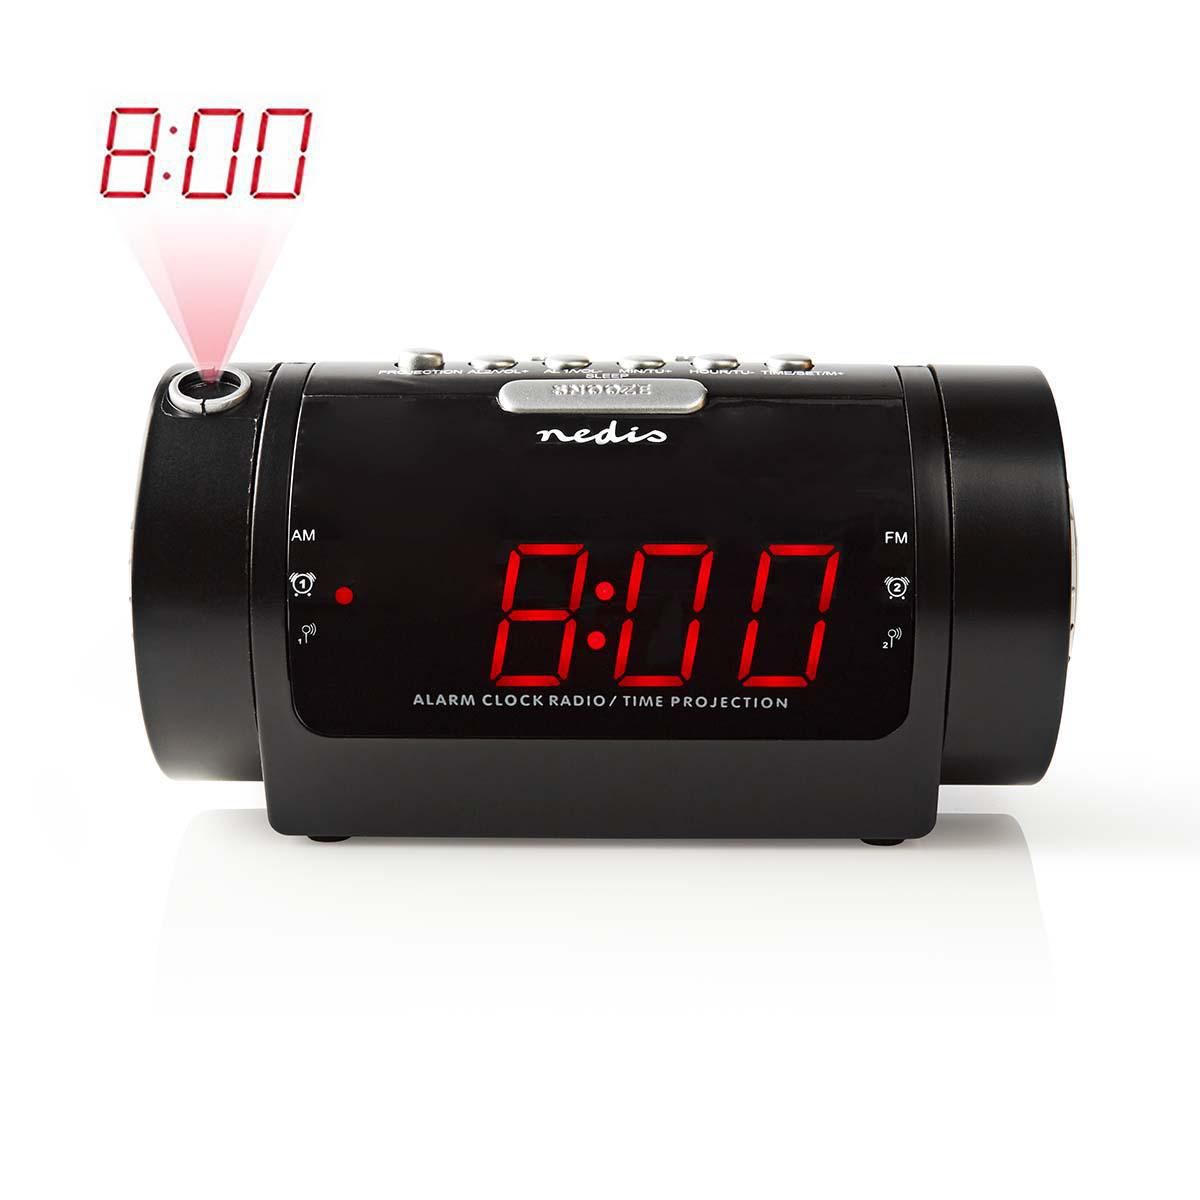 Nedis CLAR005BK budík s rádiem s projekcí času, 0.9" LED displej, FM rádio, duální budík